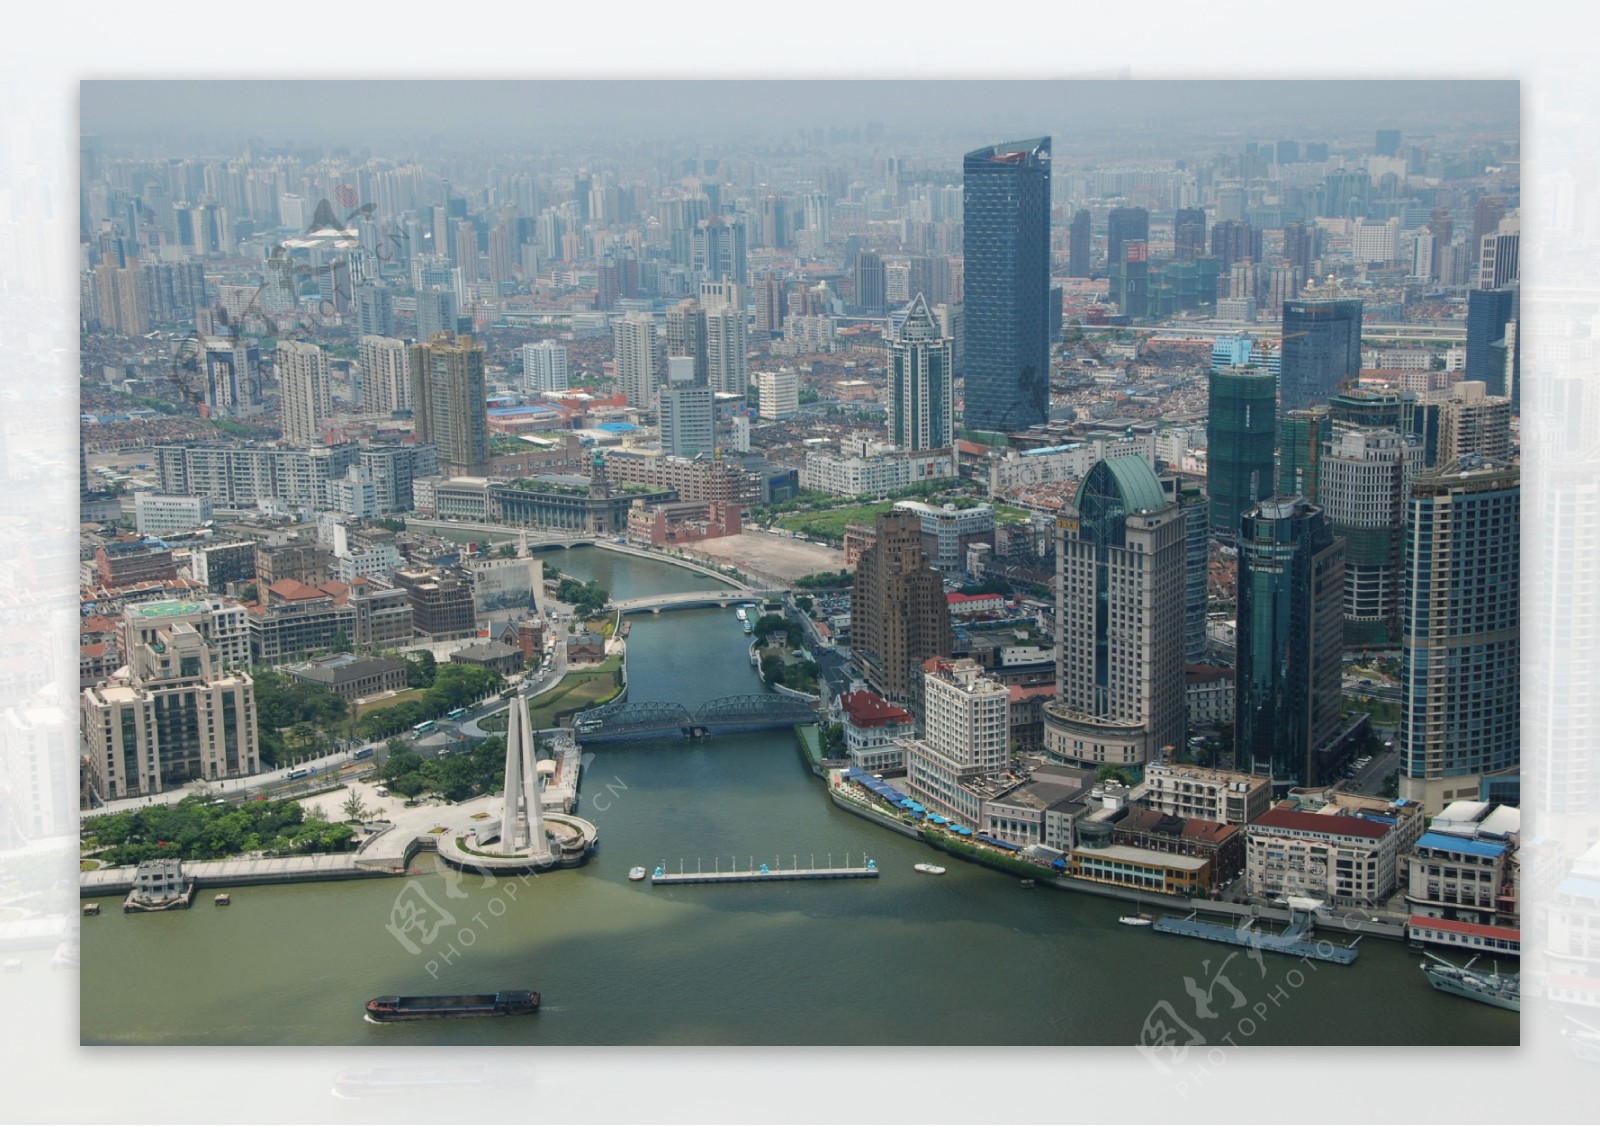 上海黄浦江苏州河交汇处俯瞰图片